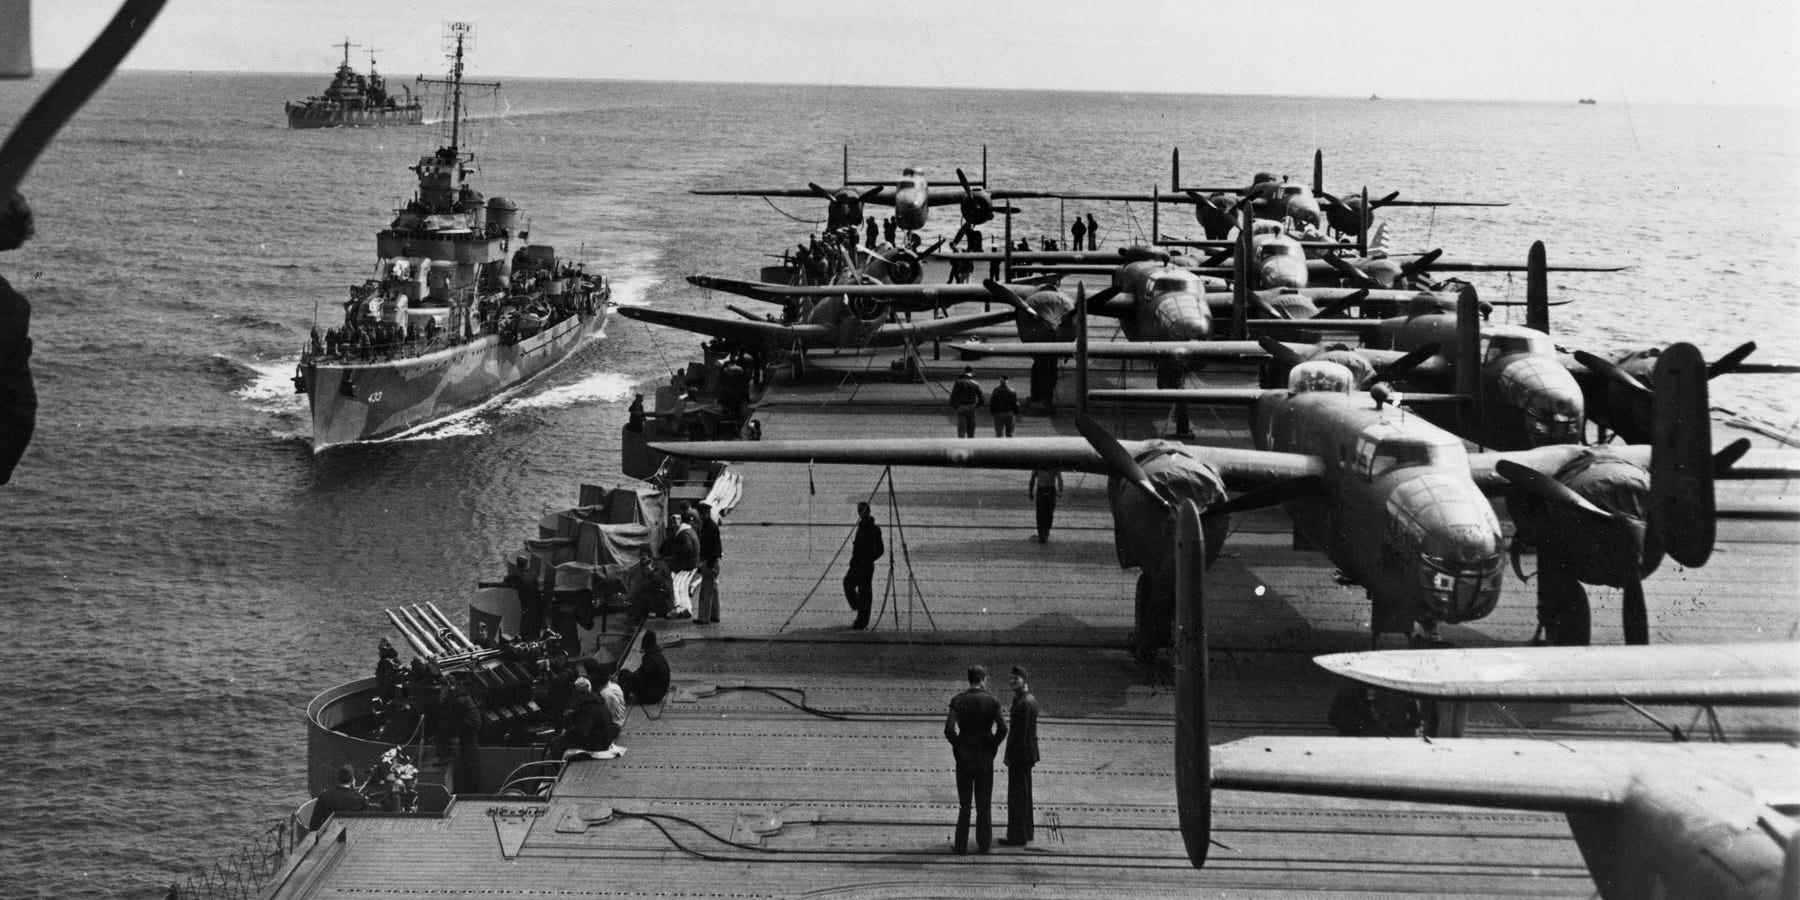 Besatzungen und ihre B-25 Mitchell-Bomber sind auf dem Deck der USS Hornet aufgereiht, um sich auf ihren Überfall auf kaiserliche japanische Militär- und Industrieziele im April 1942 vorzubereiten.